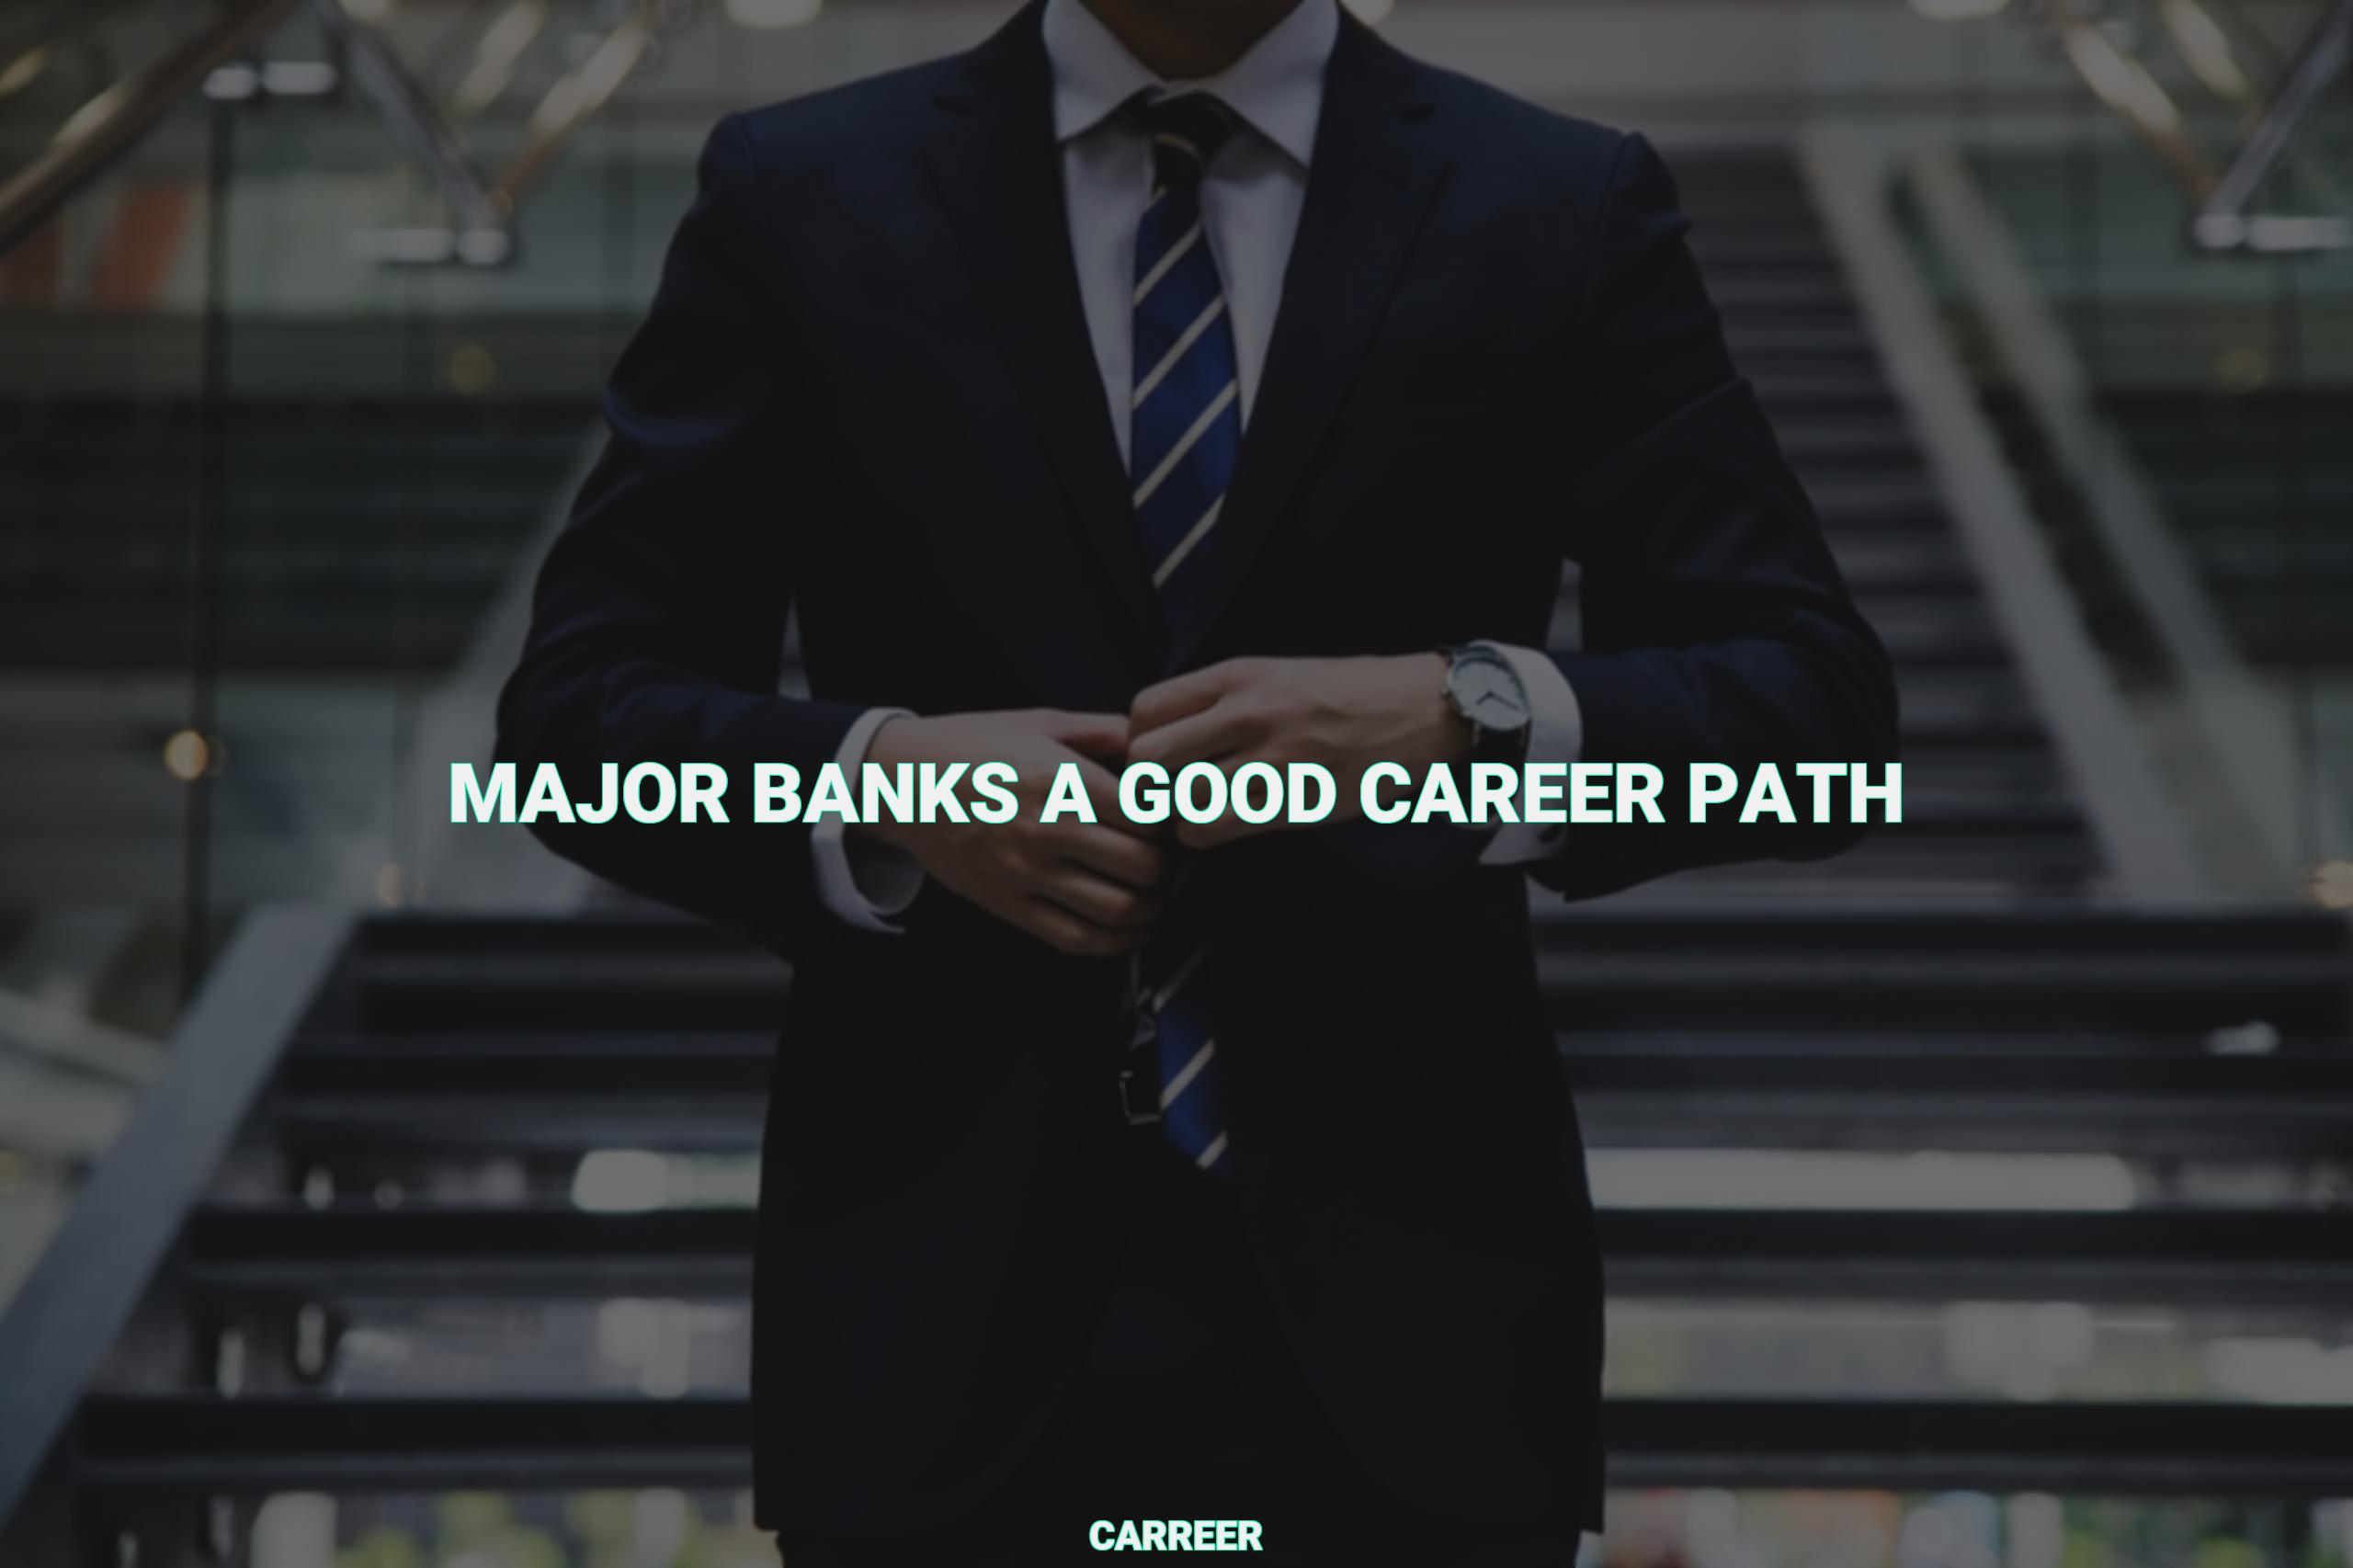 Major banks a good career path